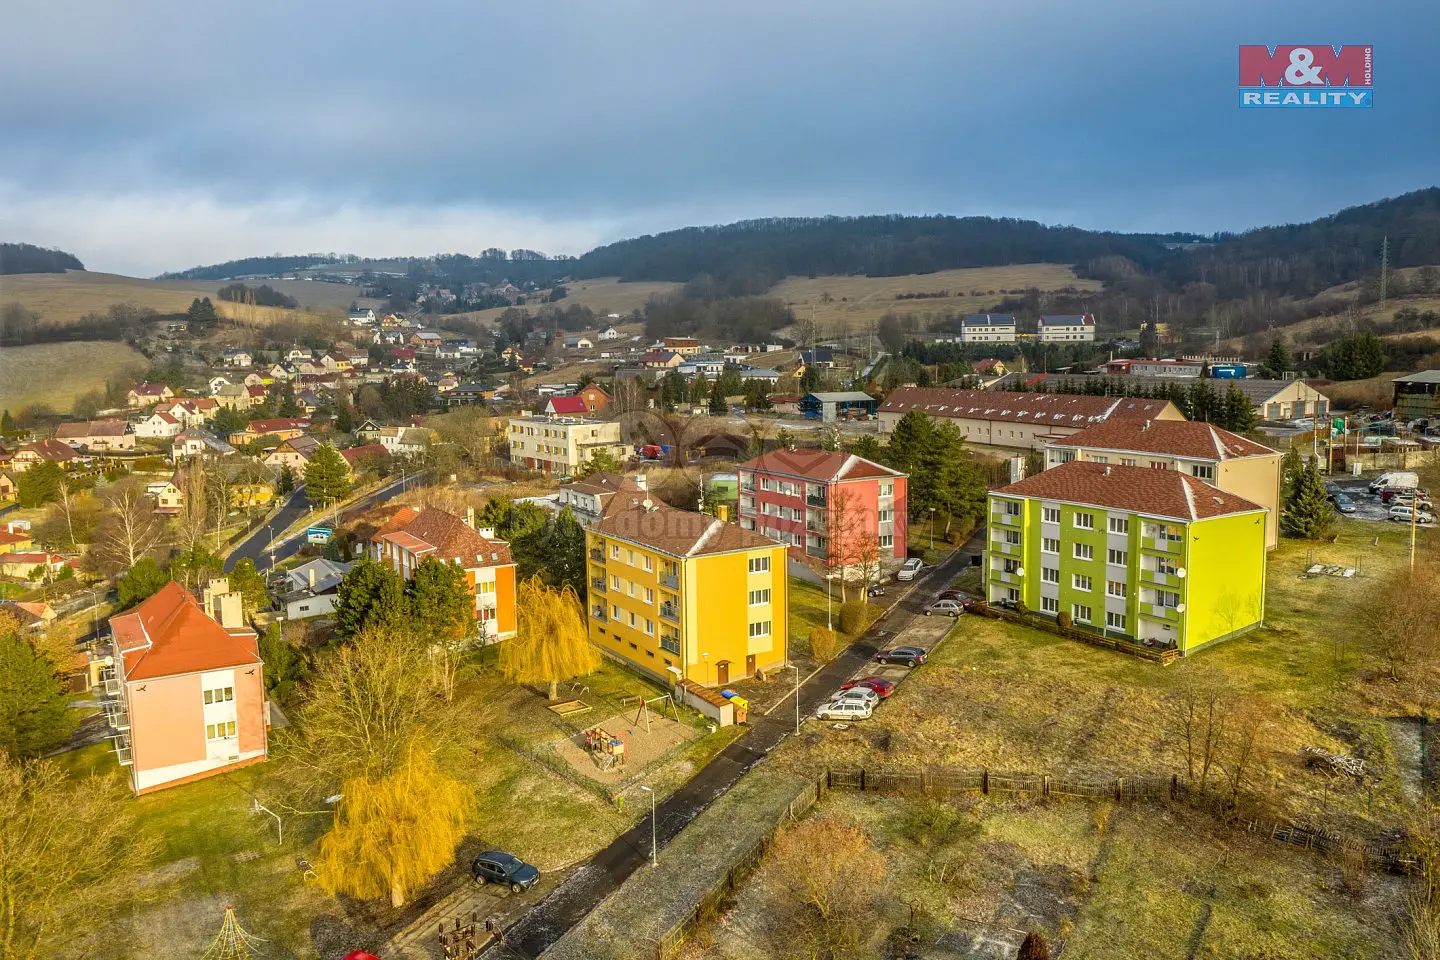 Chuderov, okres Ústí nad Labem